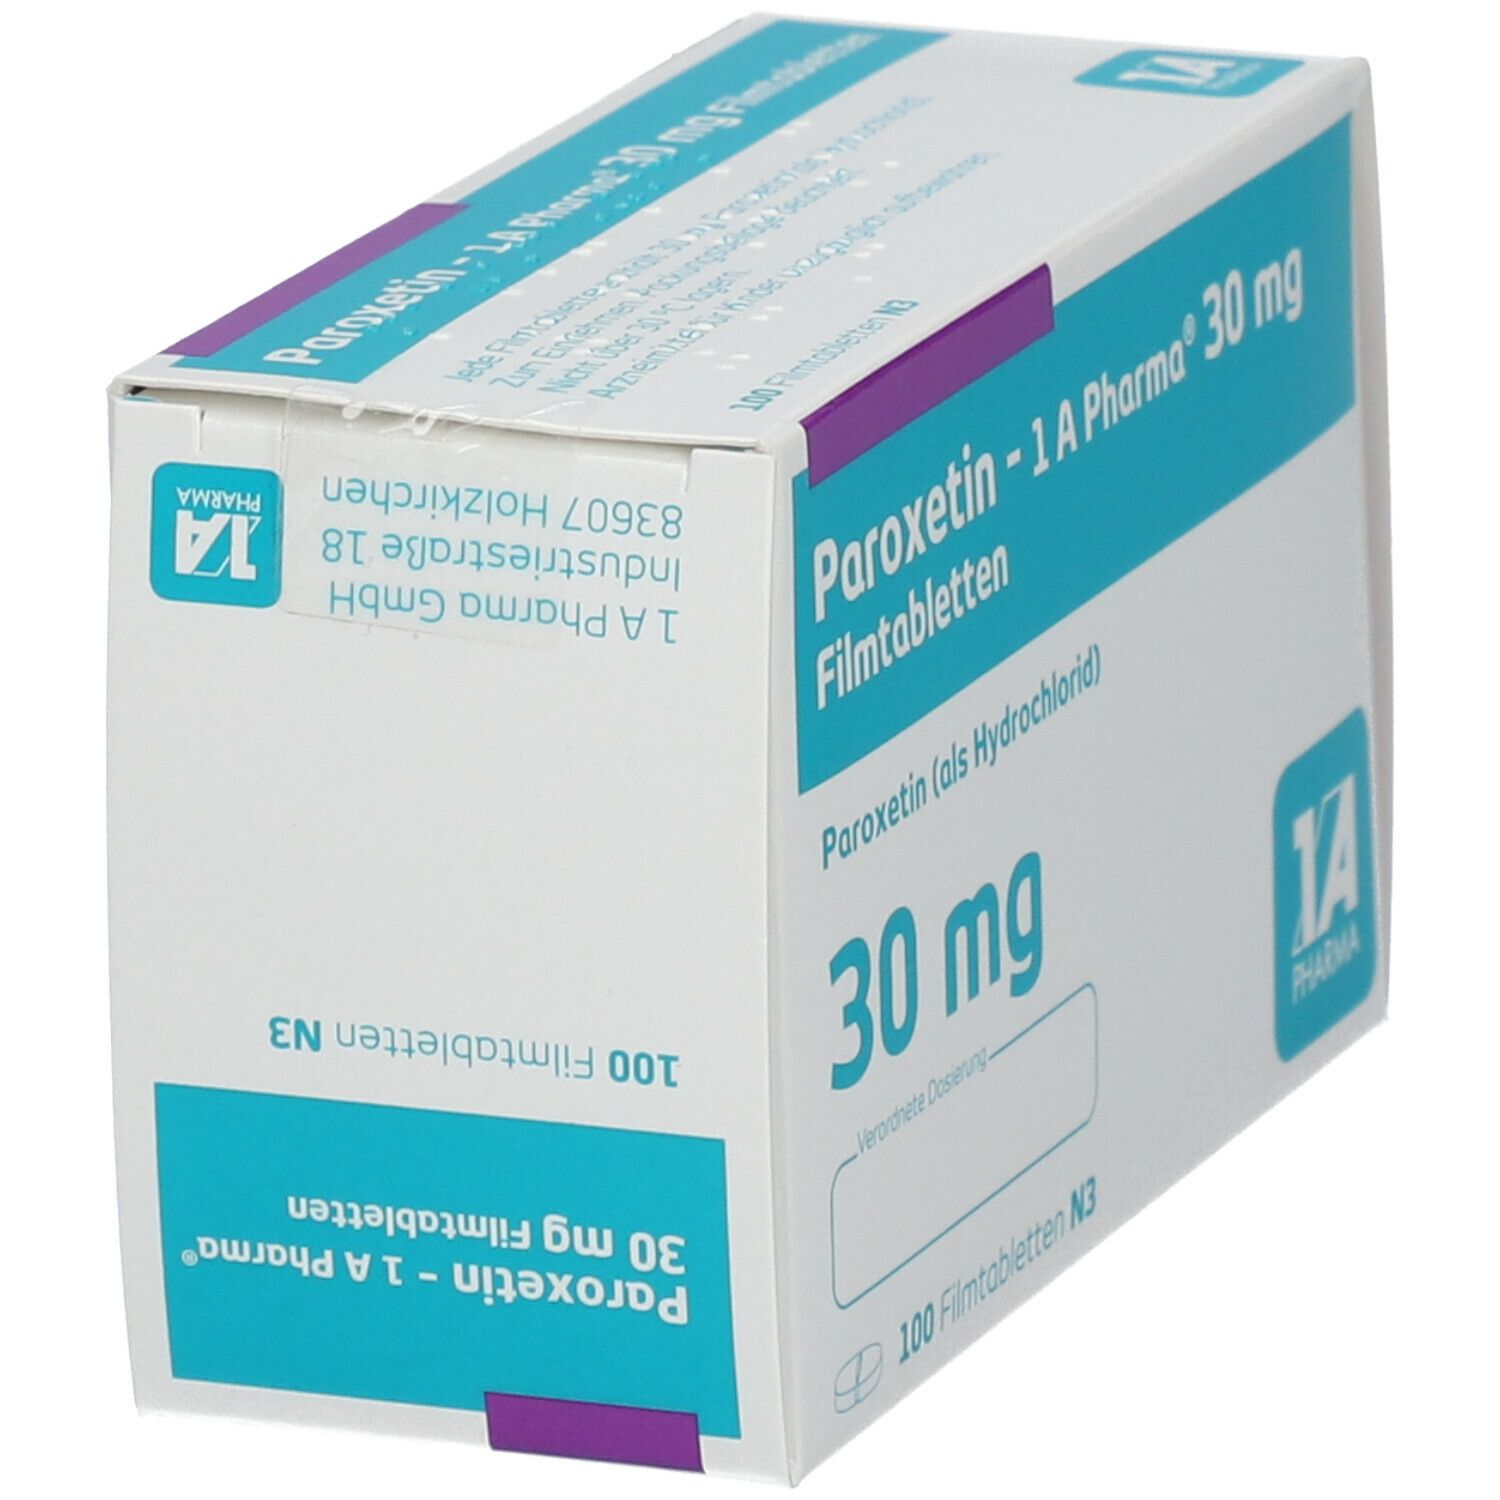 Paroxetin 1A Pharma® 30Mg